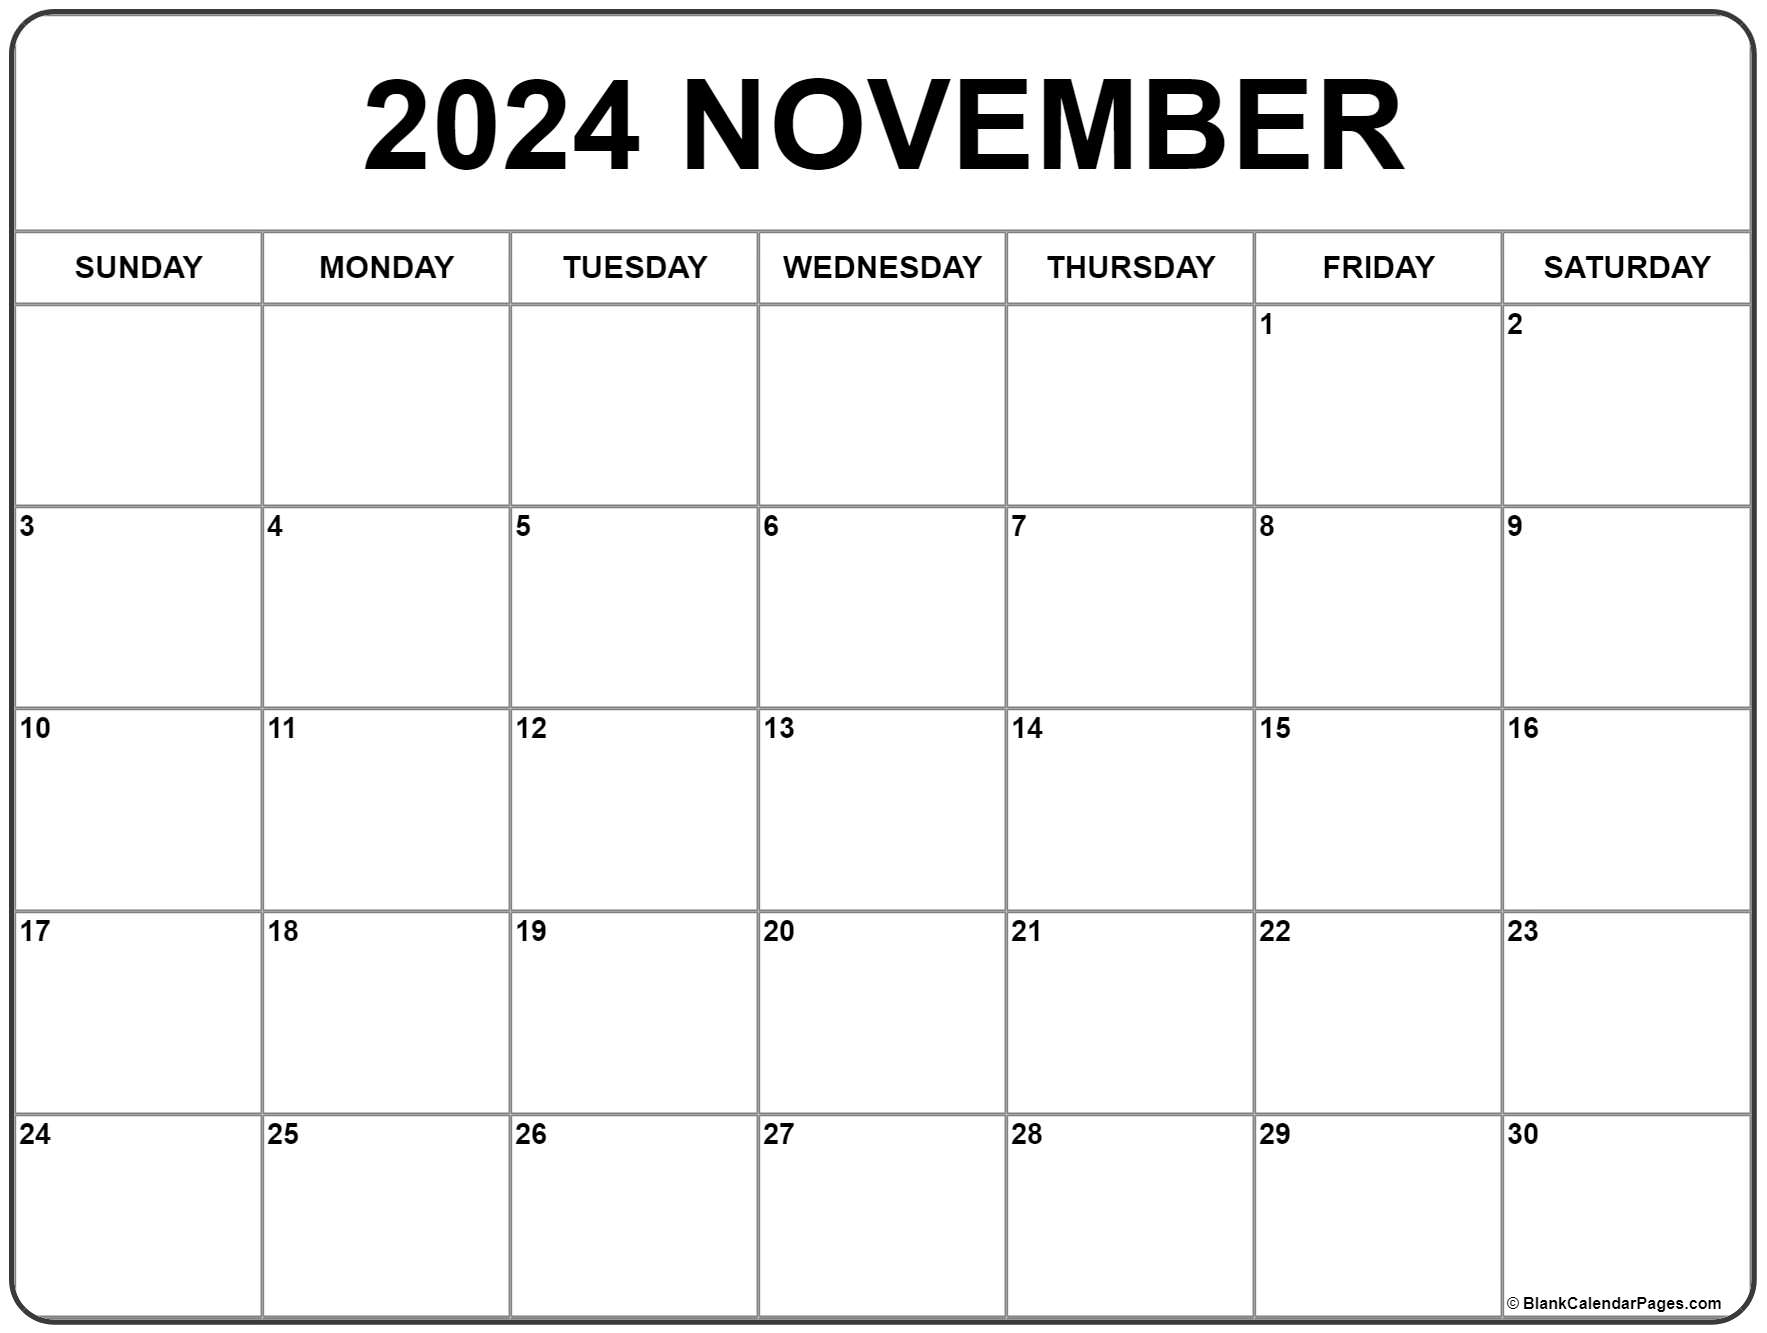 Thanksgiving Day 2024 - Calendar Date